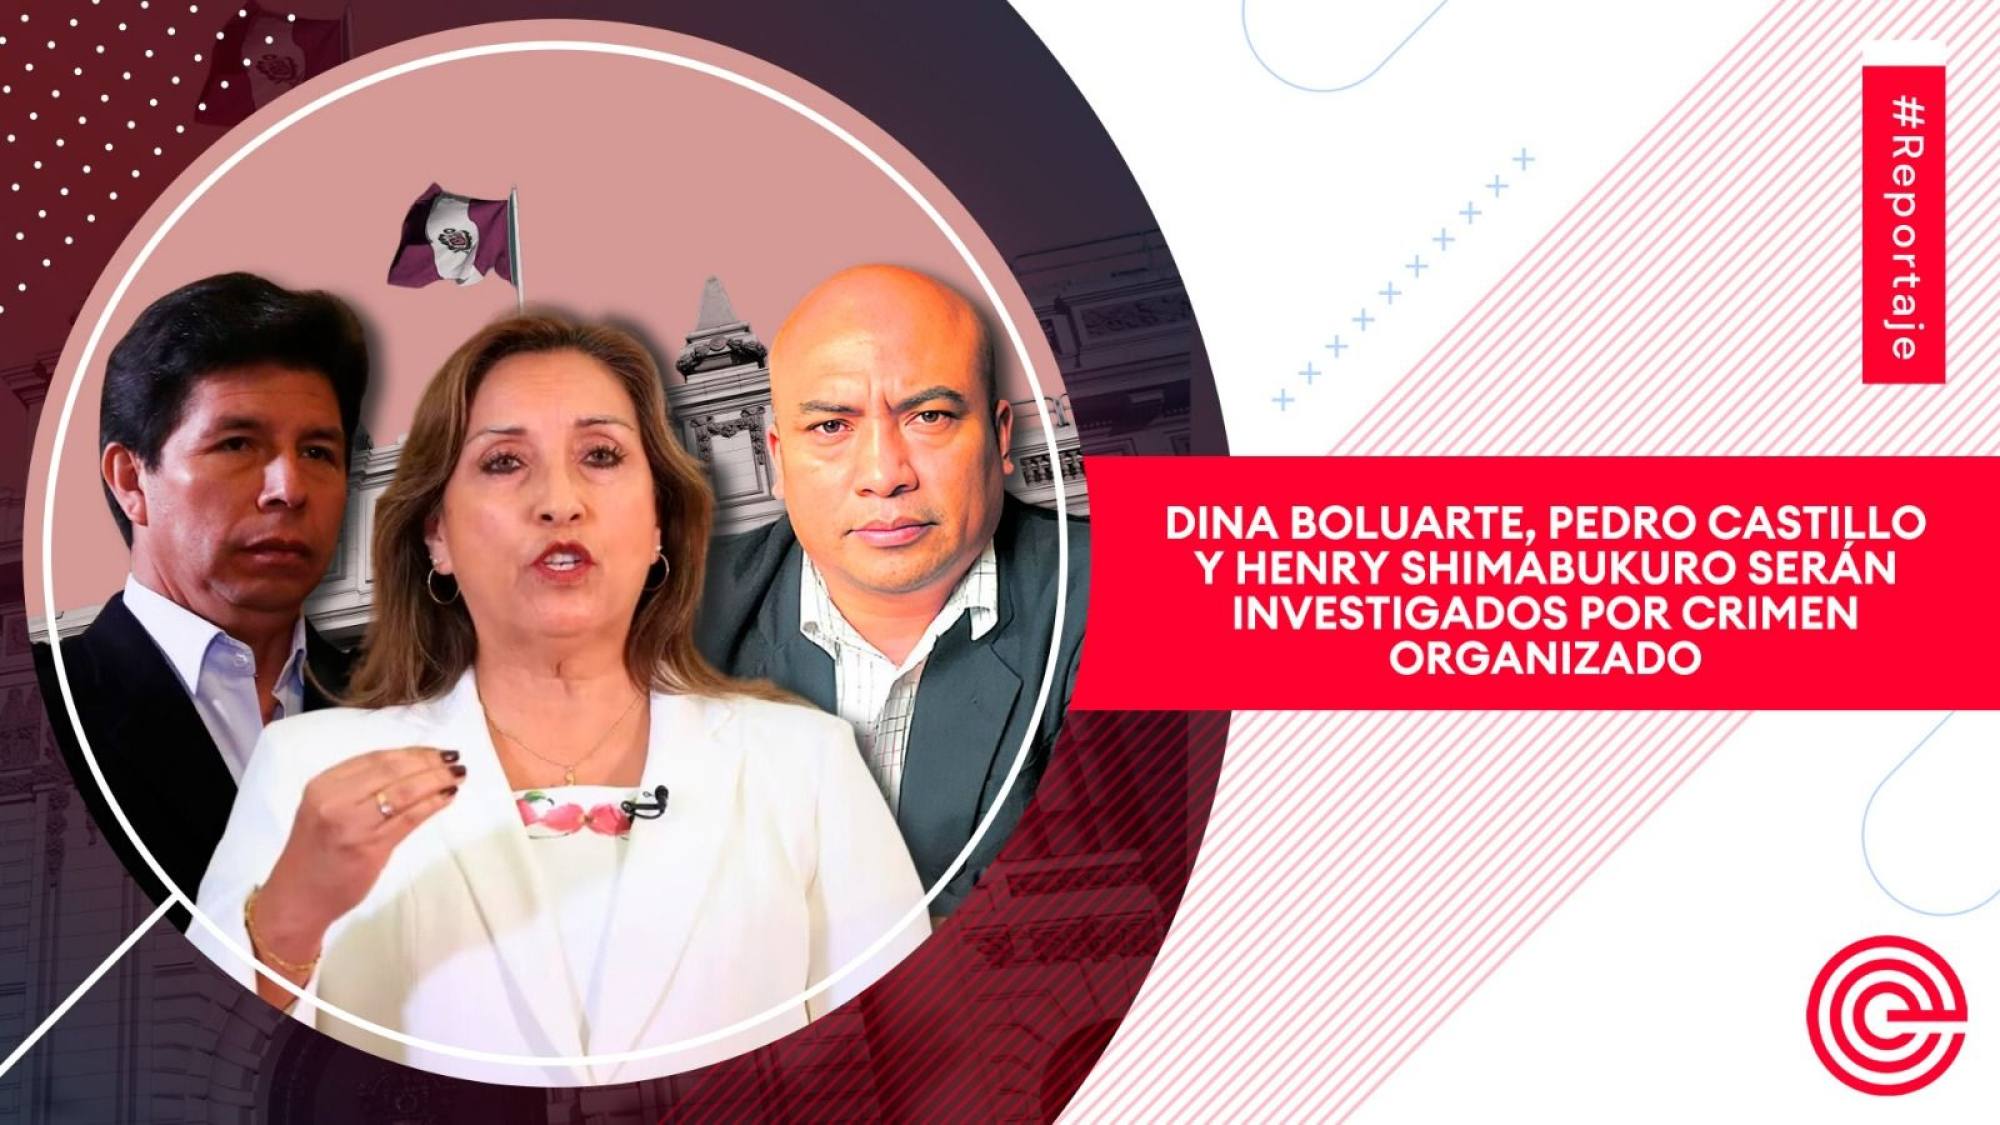 Dina Boluarte, Pedro Castillo y Henry Shimabukuro serán investigados por crimen organizado, Epicentro TV